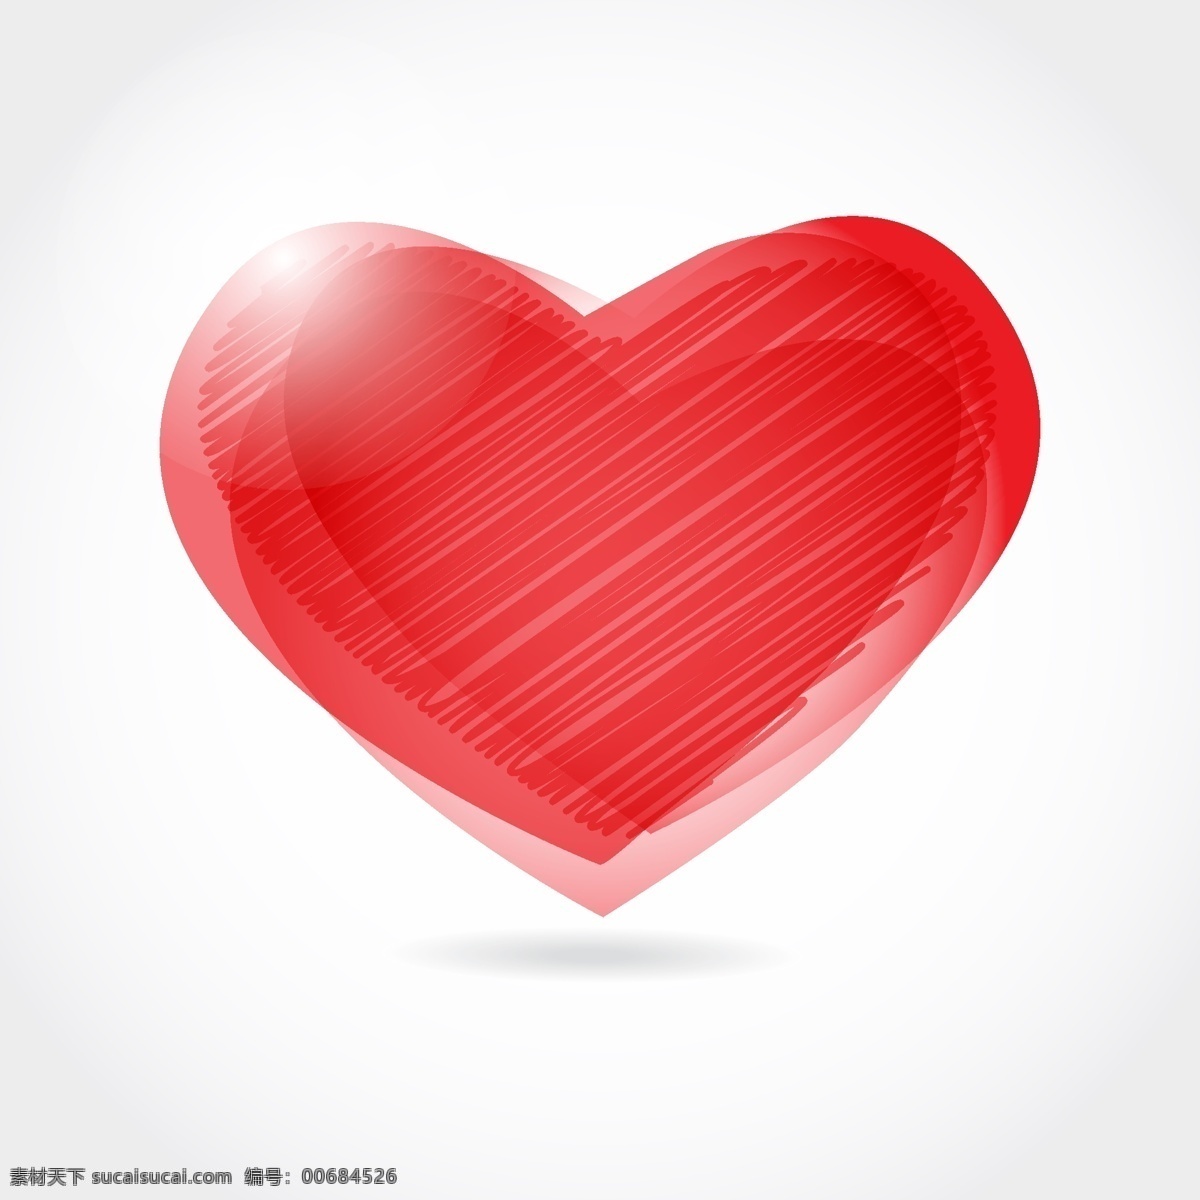 矢量 线描 红色 爱心 设计素材 情人节 心形设计 爱情心型 节日素材 情人节七夕